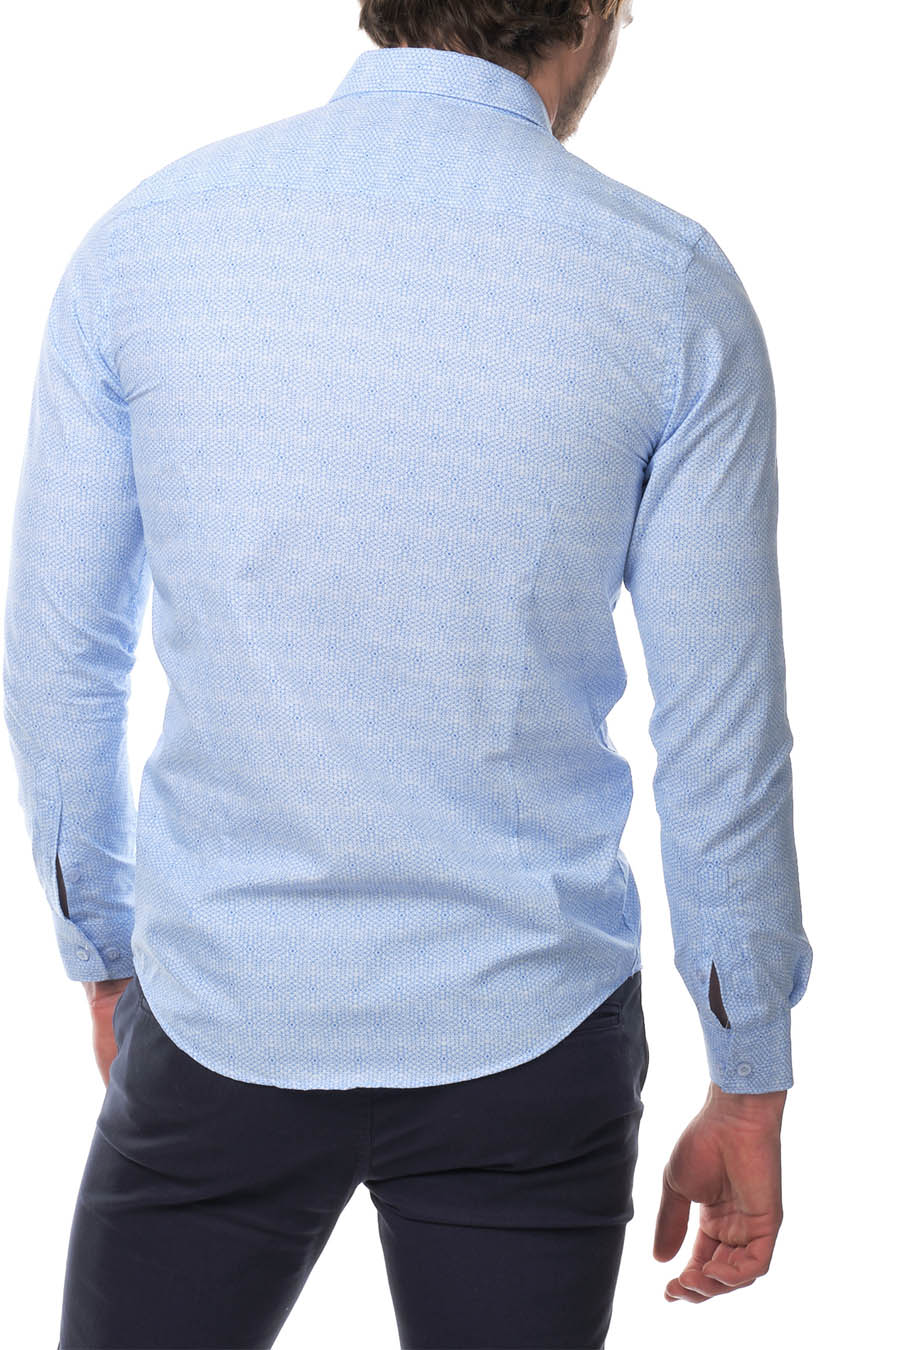 Ανδρικό πουκάμισο Iulius, Γαλάζιο 4